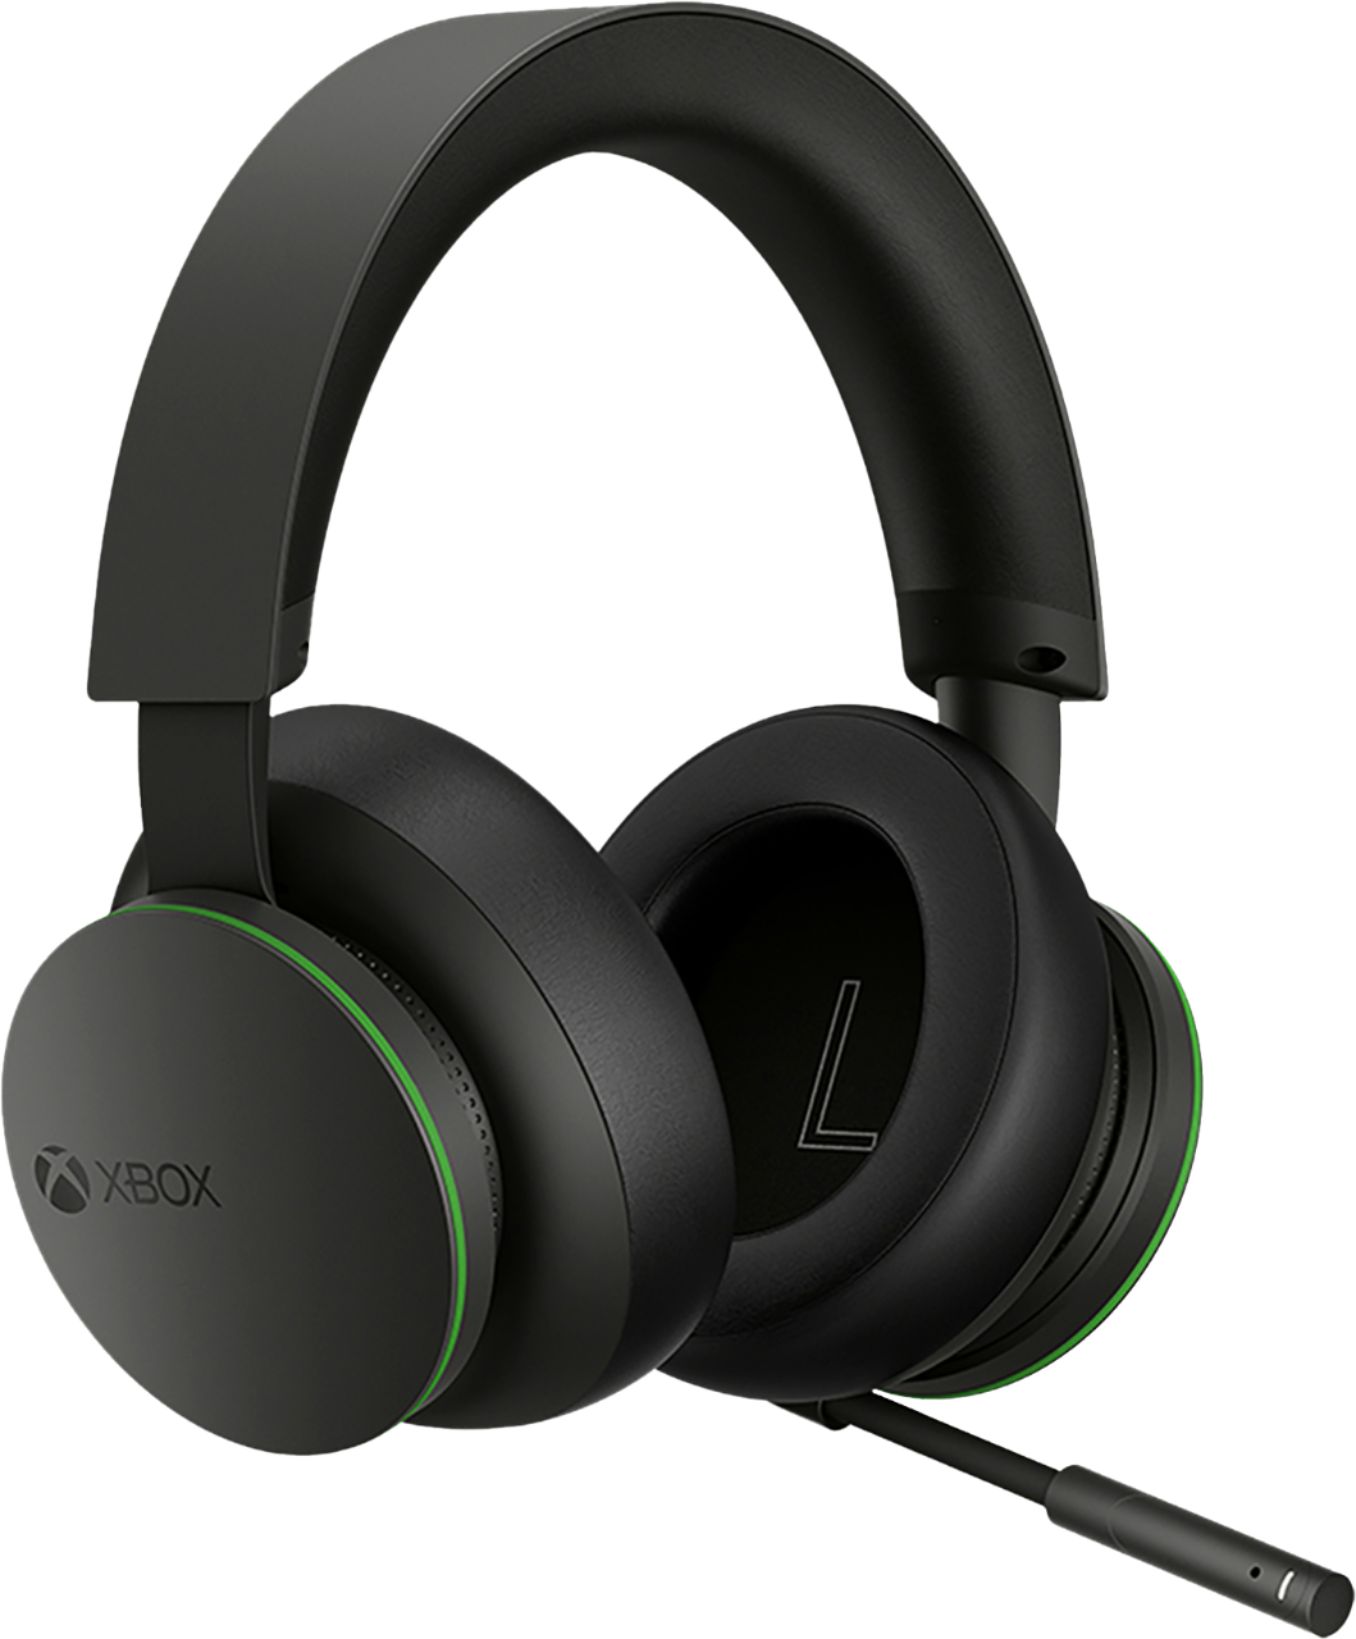 Microsoft - Xbox Wireless Headset for Xbox Series X|S, Xbox One, and Windows 10 - Black